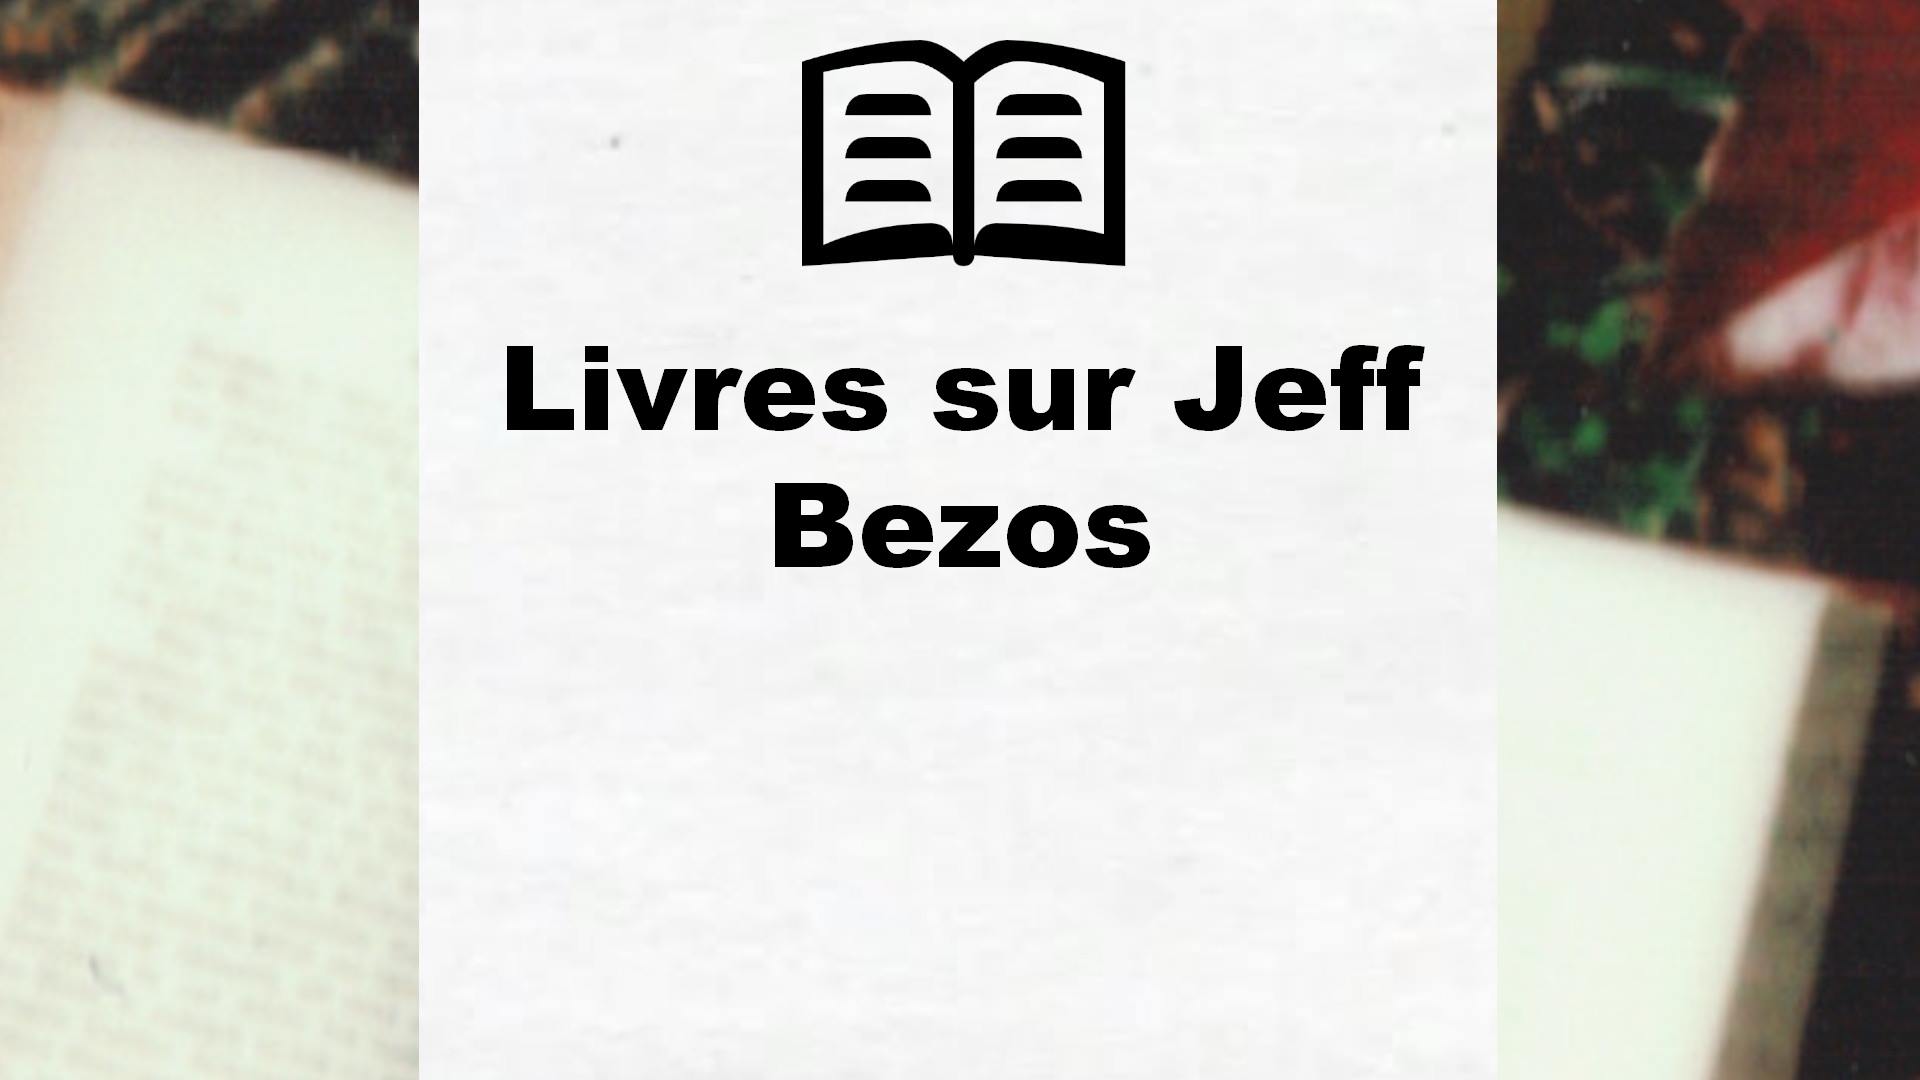 Livres sur Jeff Bezos